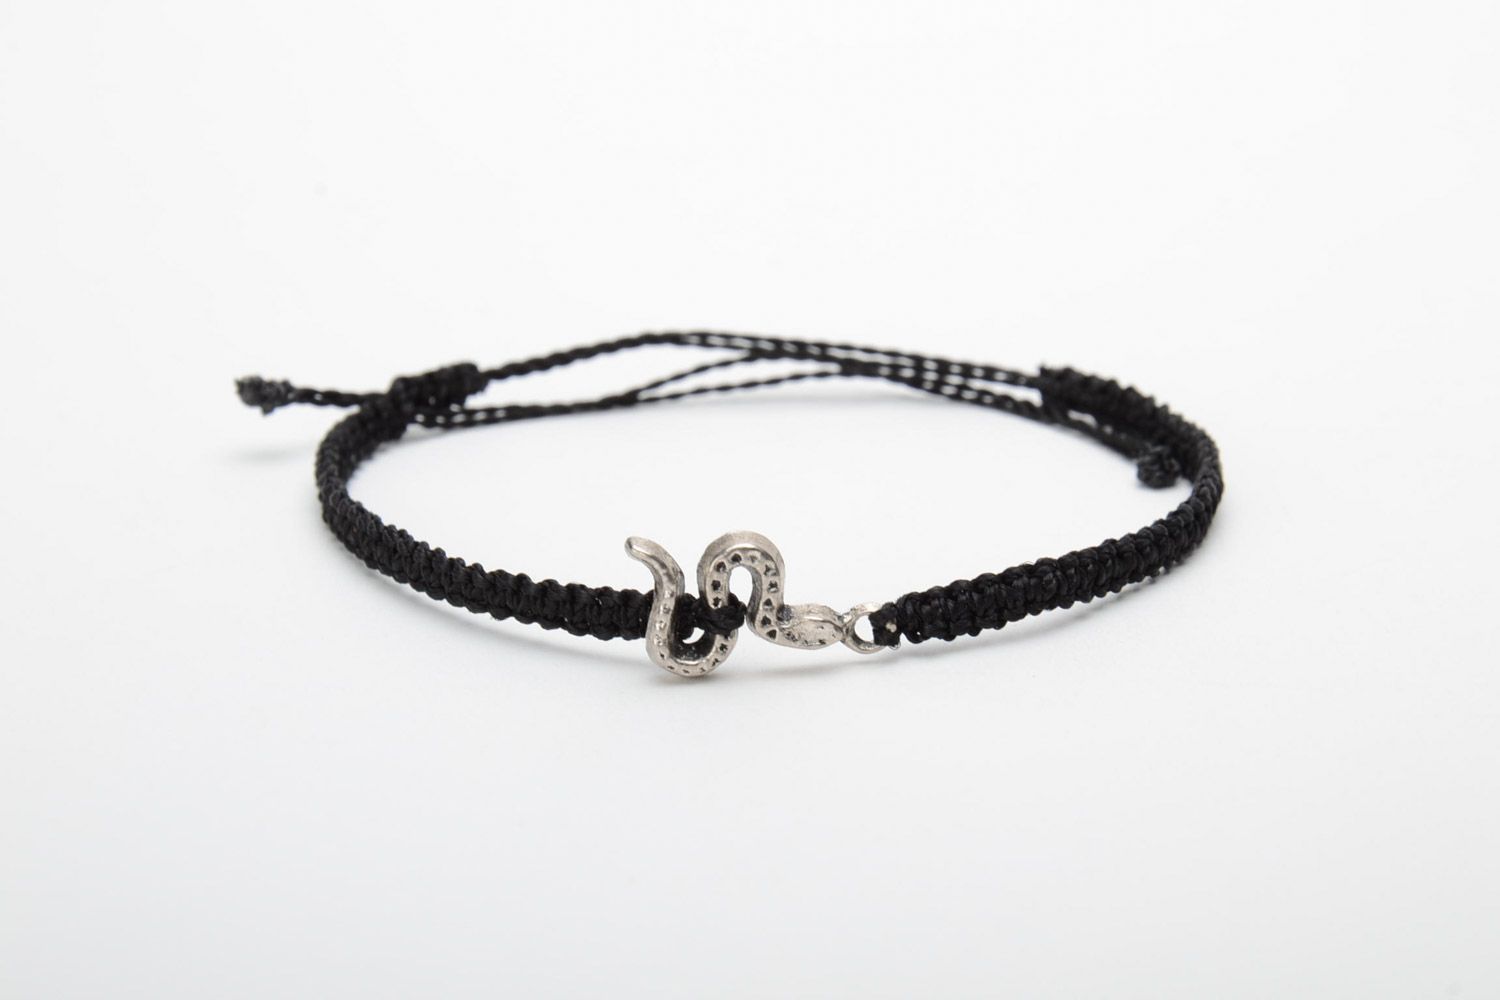 Handmade black macrame woven bracelet with metal snake charm for women photo 5